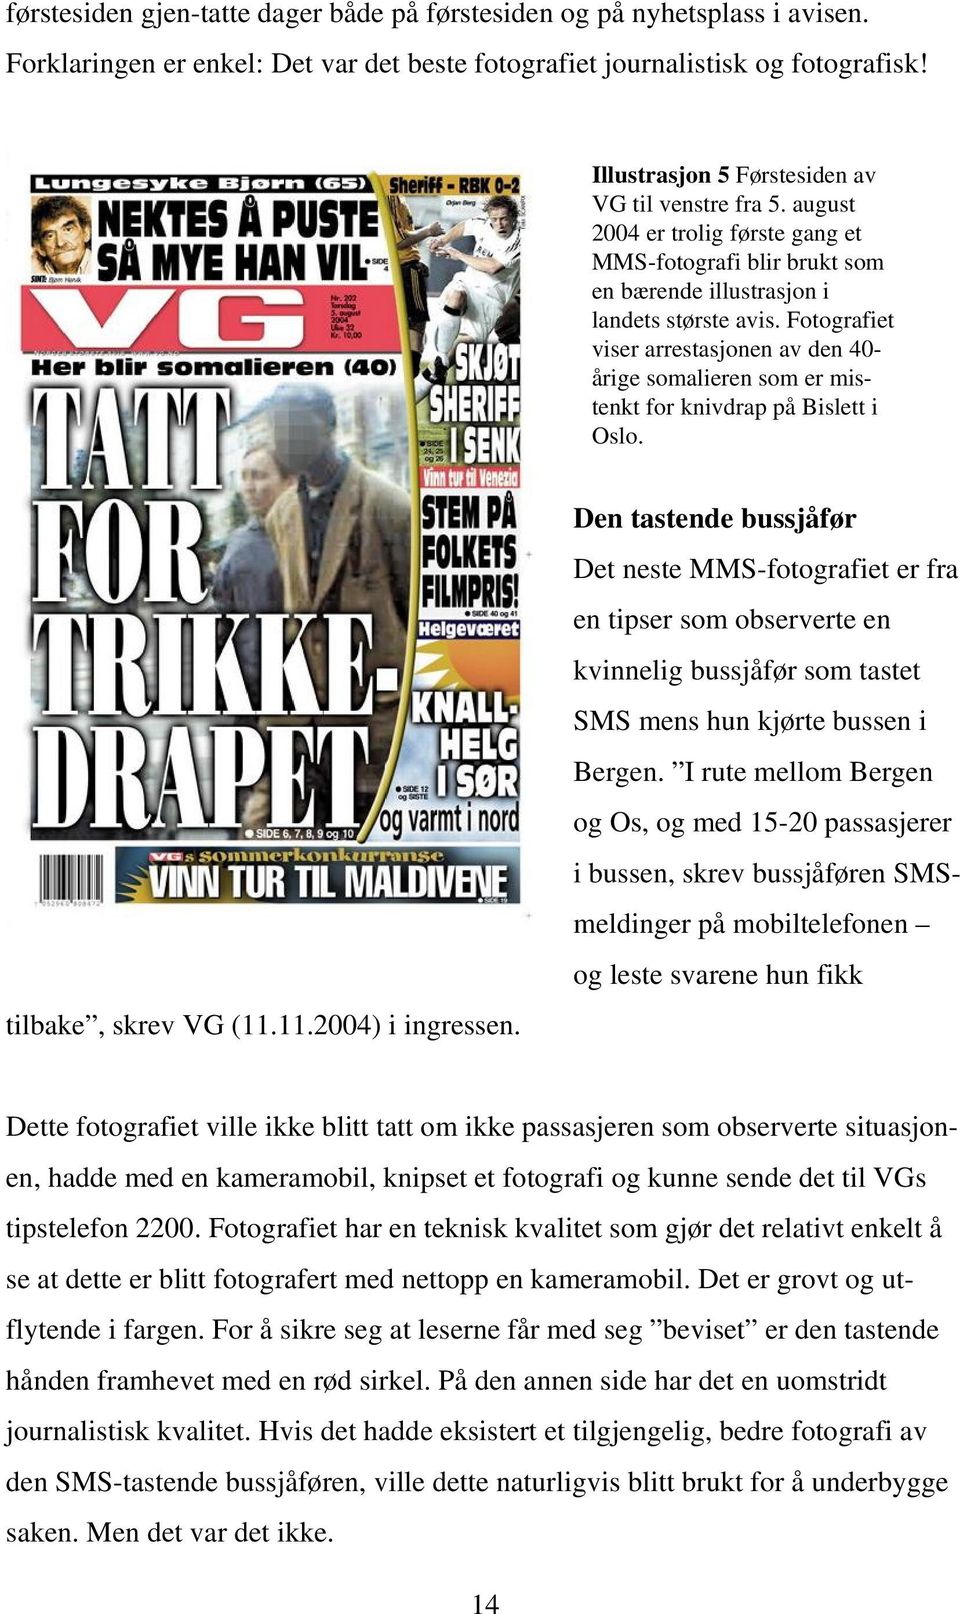 Fotografiet viser arrestasjonen av den 40- årige somalieren som er mistenkt for knivdrap på Bislett i Oslo. tilbake, skrev VG (11.11.2004) i ingressen.